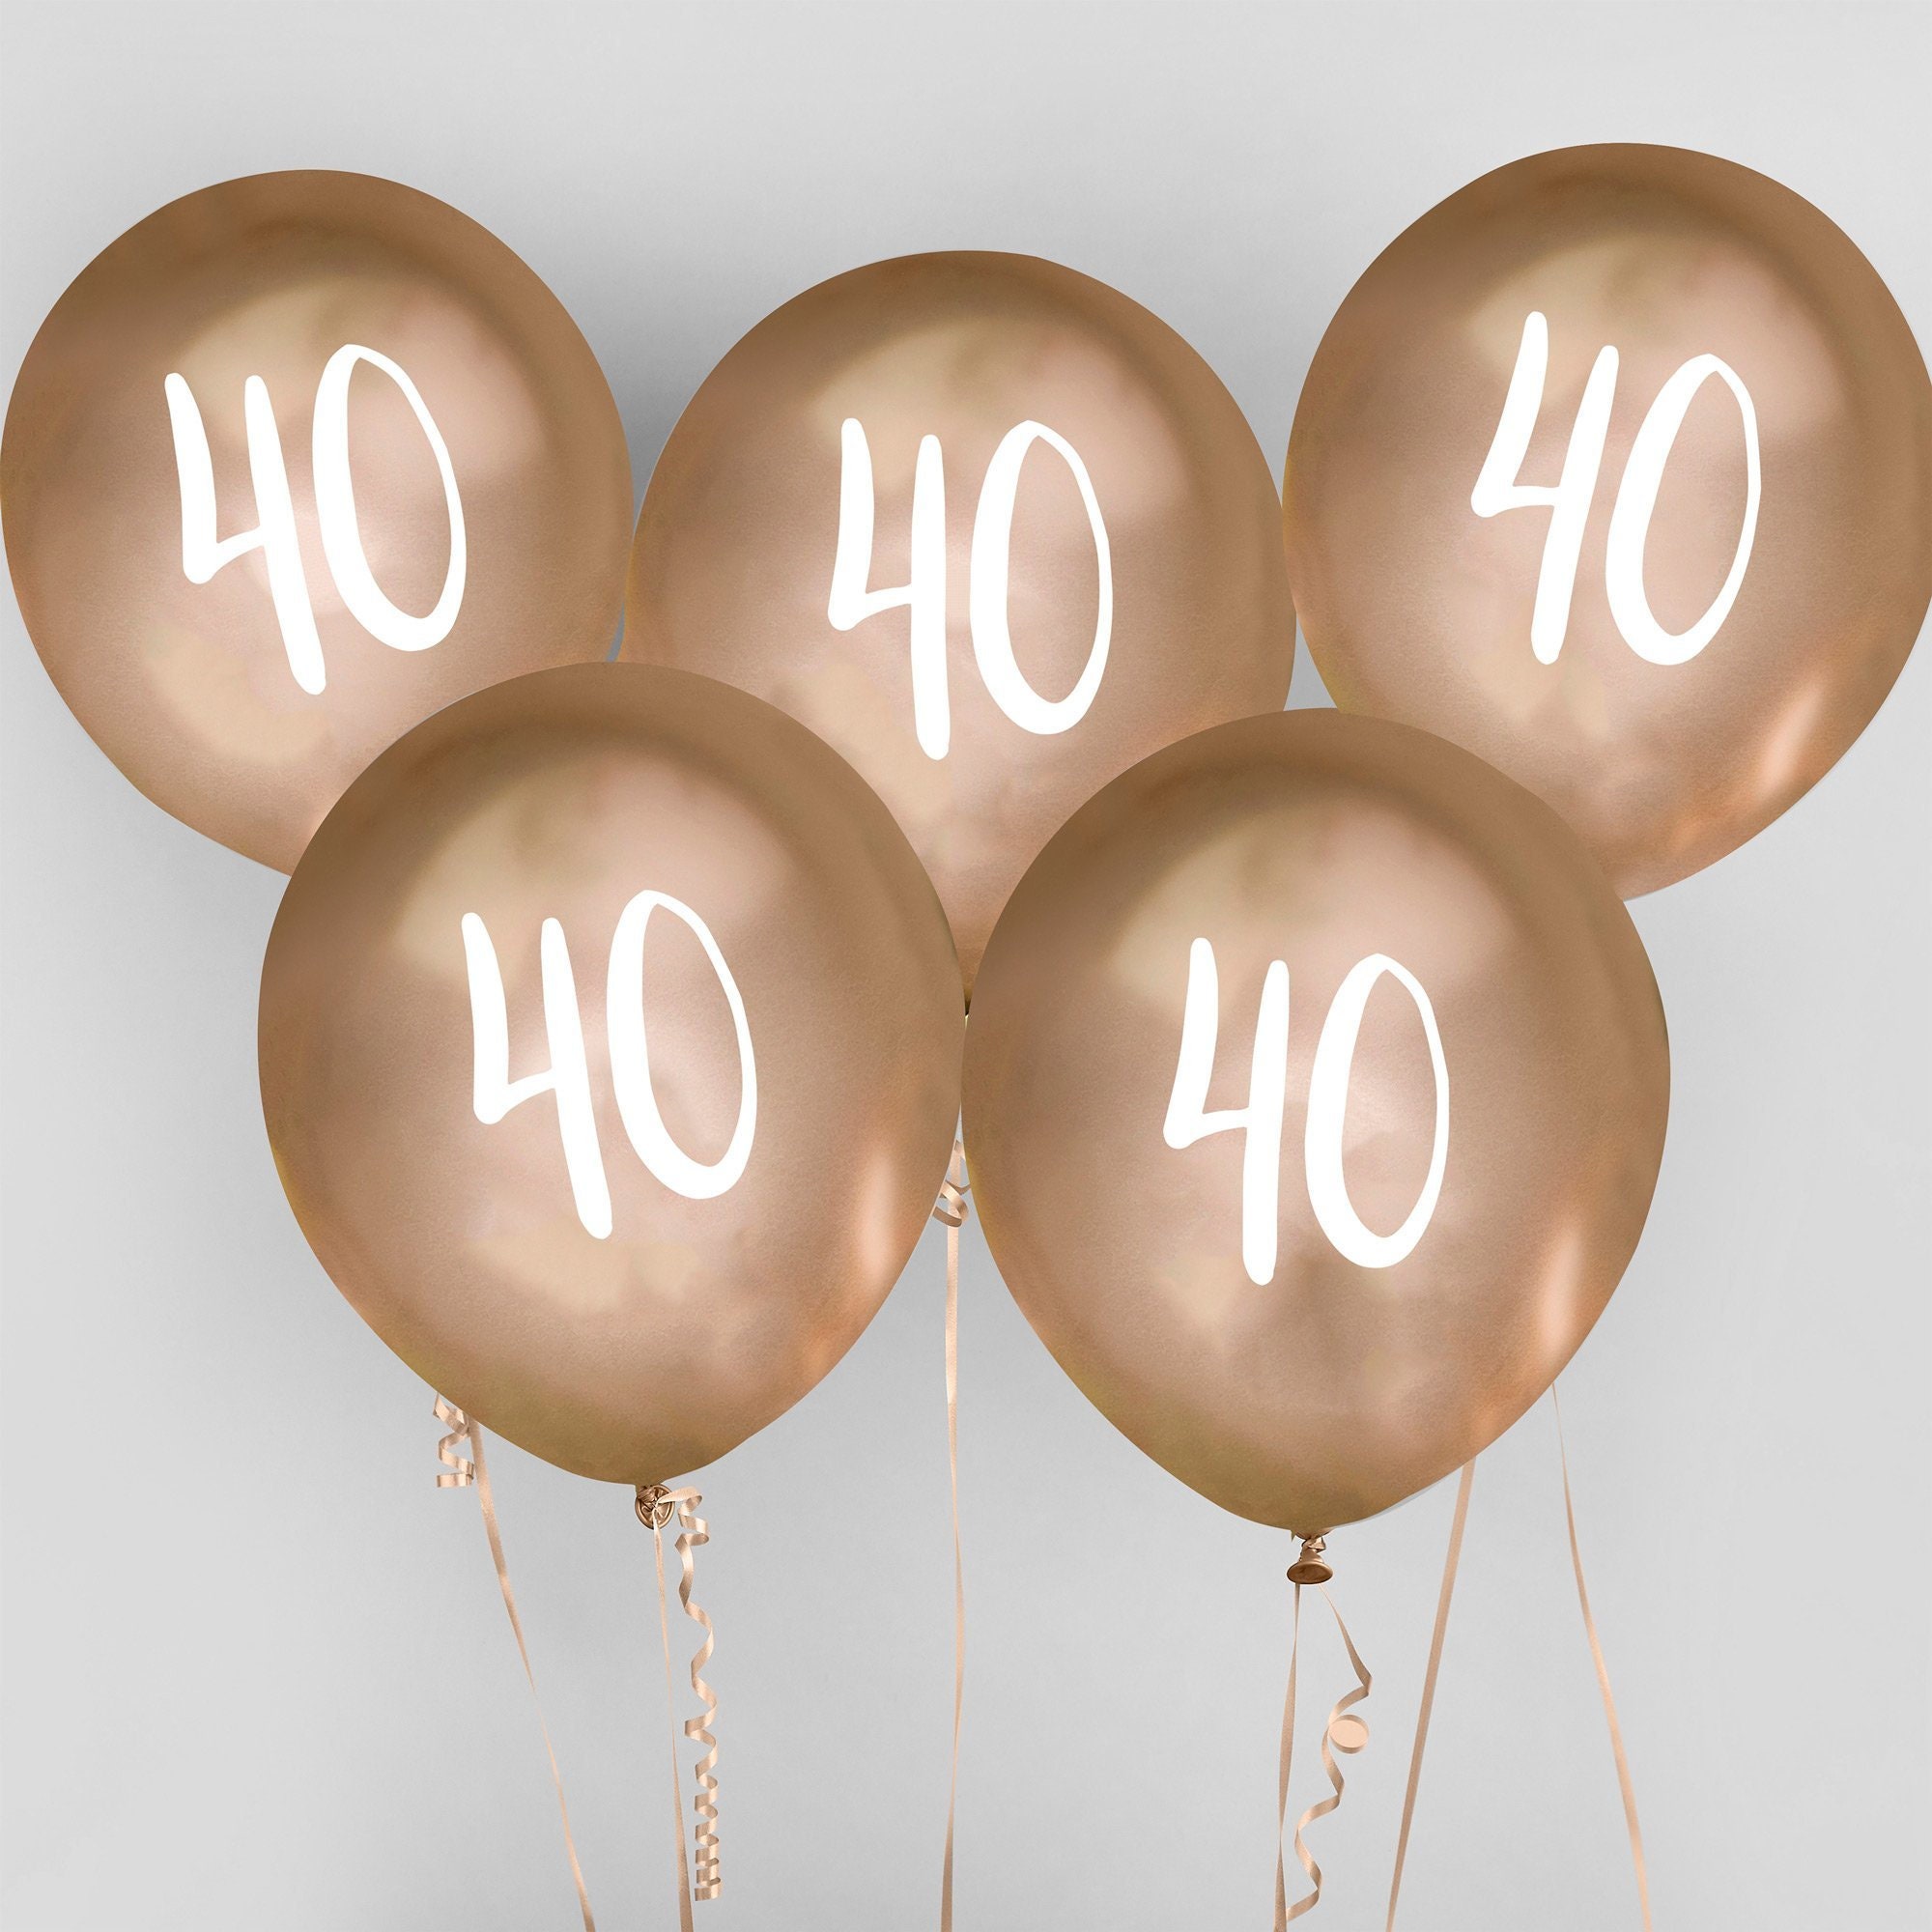 Farmacologie Koken mooi Gold 40th Birthday Balloons Happy Birthday 40 Balloons - Etsy